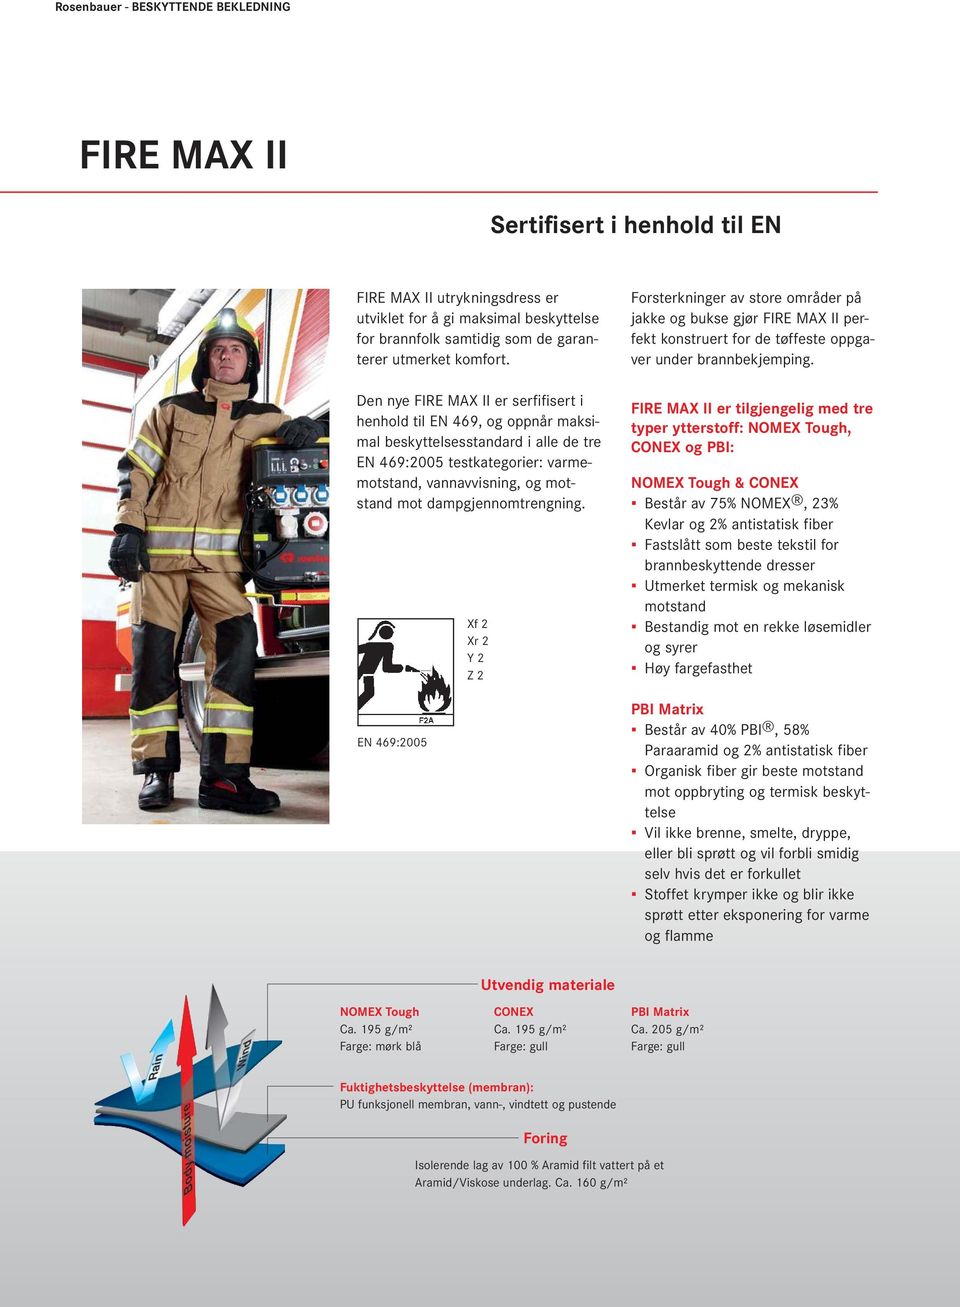 Den nye FIRE MAX II er serfifisert i henhold til EN 469, og oppnår maksimal beskyttelsesstandard i alle de tre EN 469:2005 testkategorier: varmemotstand, vannavvisning, og motstand mot